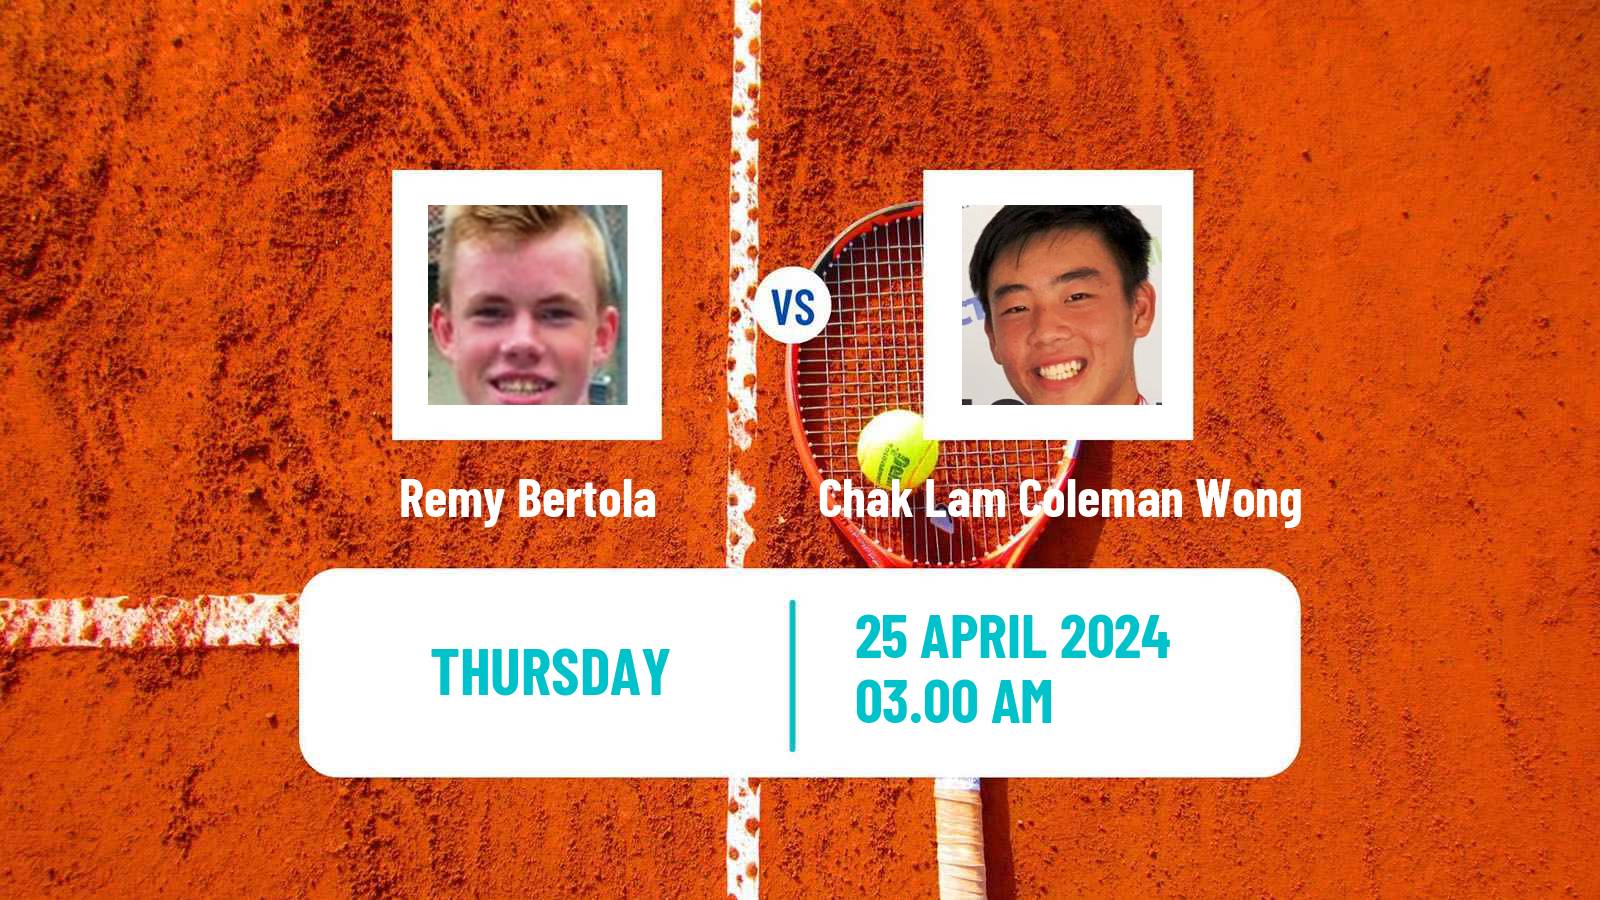 Tennis Shenzhen 3 Challenger Men Remy Bertola - Chak Lam Coleman Wong